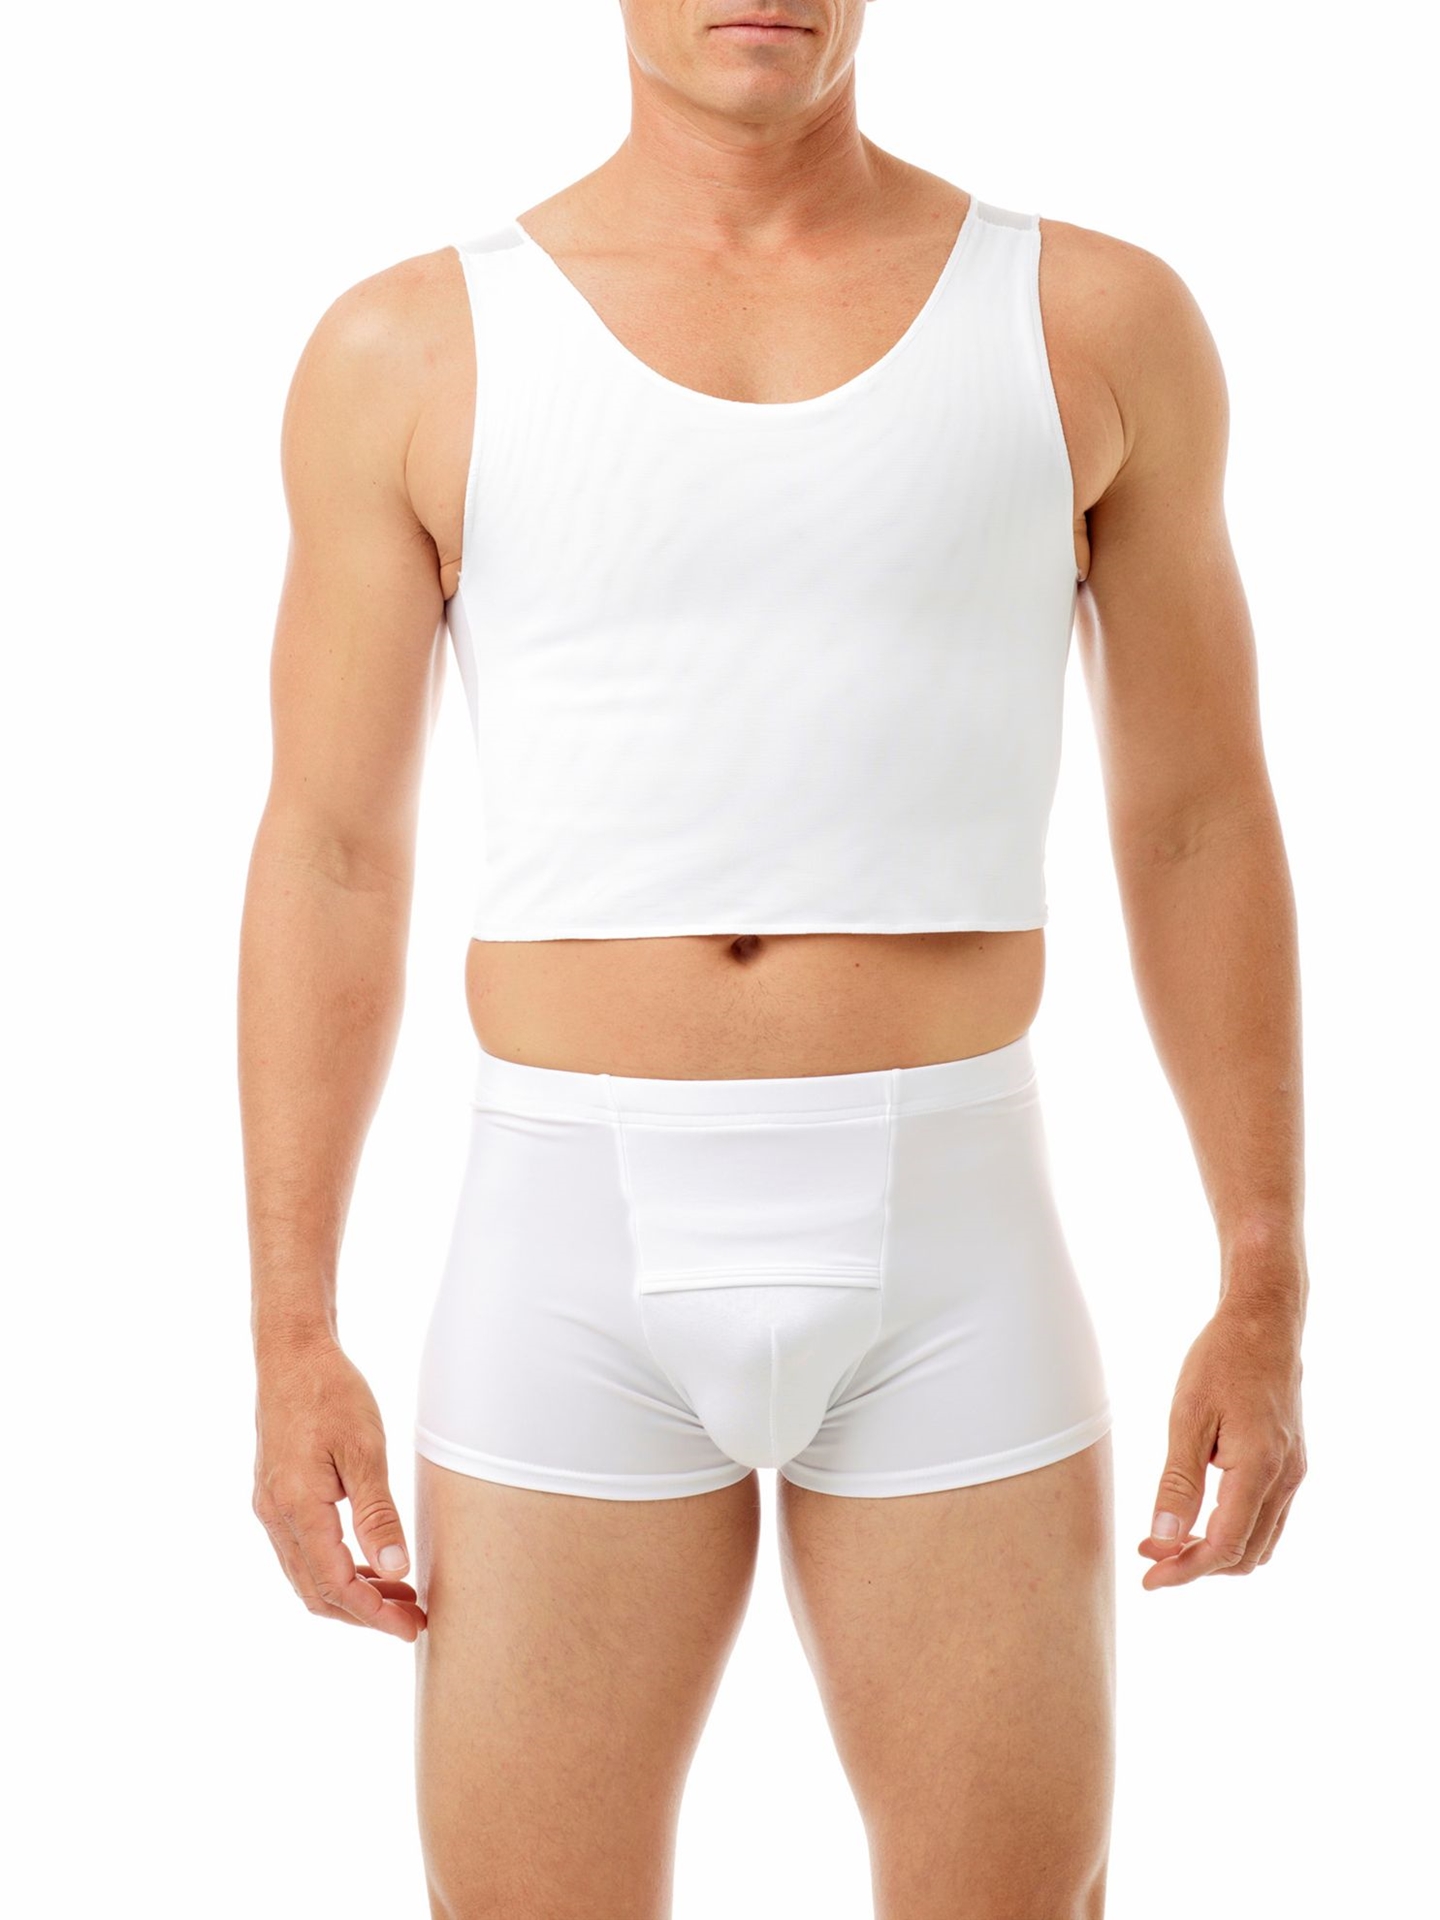 Althee Mesh Underwear Postpartum 10 Pack Disposable Mesh Panties Hospital Postpartum  Underwear S-2xl